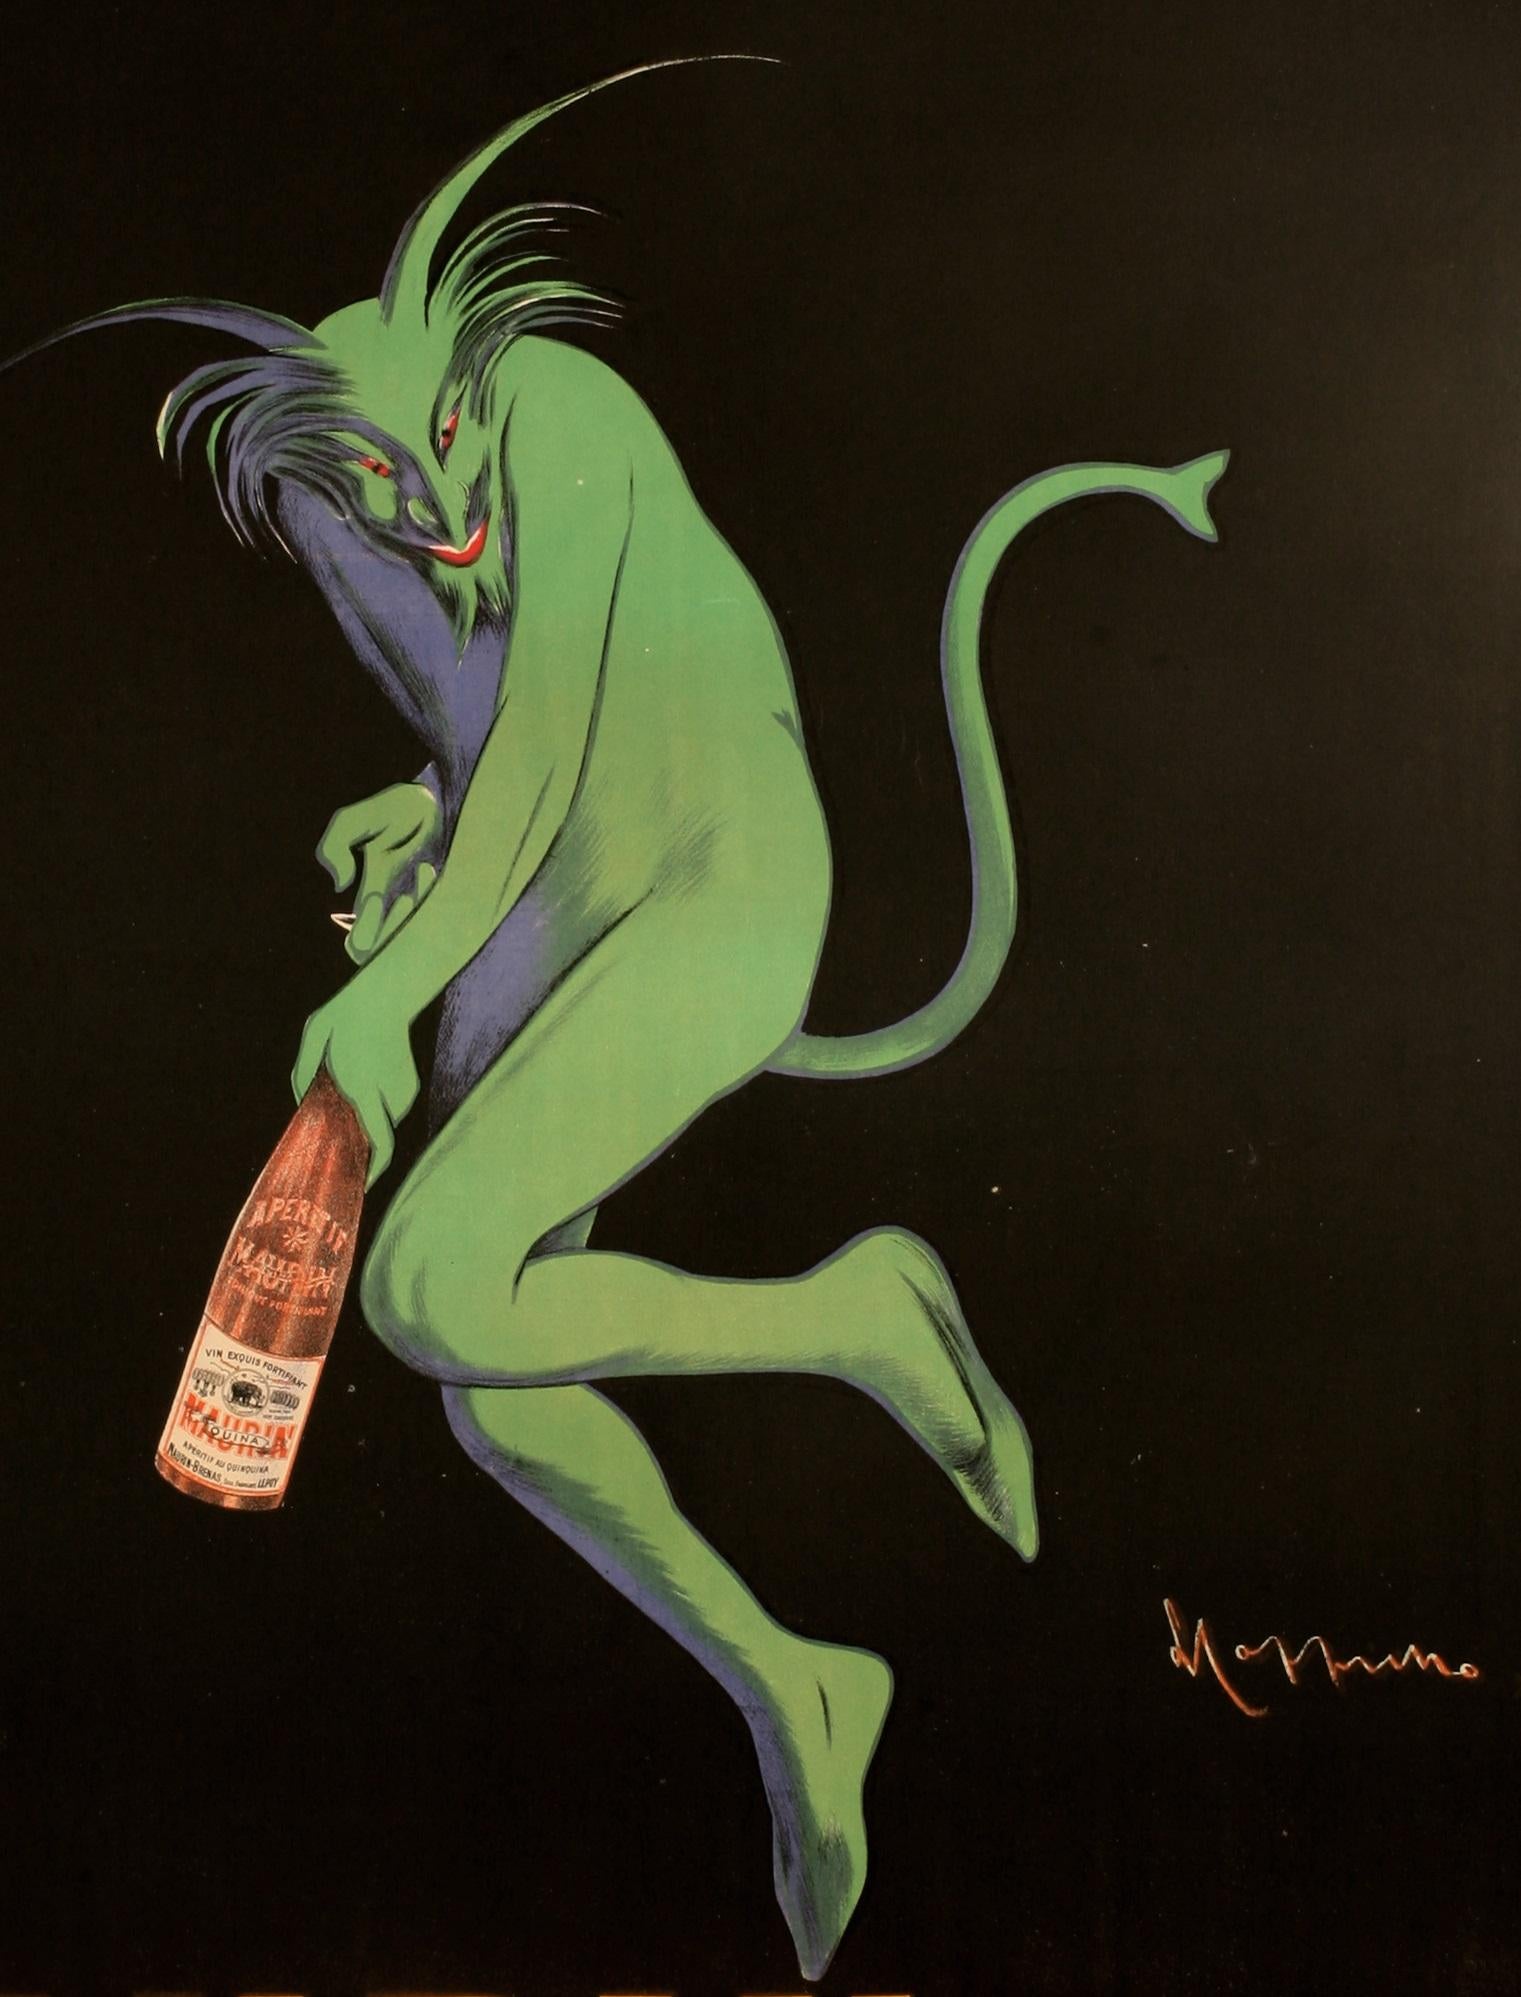 Original Vintage Alkohol Plakat für Maurin Quina aus dem Jahr 1906 von Leonetto Cappiello.

Künstler: Leonetto Cappiello 
Titel: Maurin Quina - Le Puy - Frankreich
Datum: 1906 
Größe: 44,9 x 60,6 Zoll / 114 x 154 cm
Drucker : Imp. P. Vercasson &